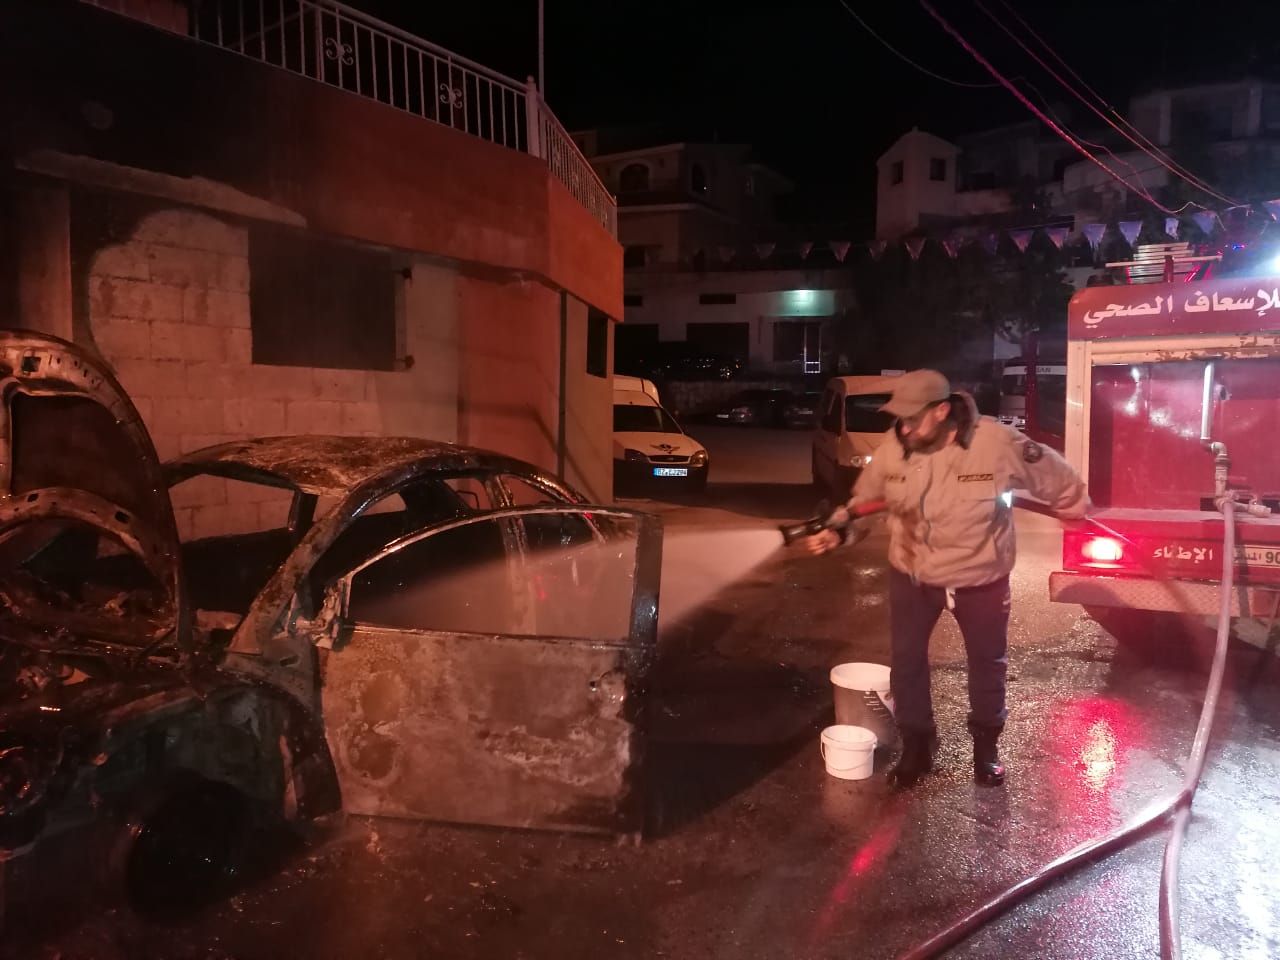 إحتراق سيارة صباح اليوم في بلدة معركة حي المحفرة و عملت جمعية الرسالة للإسعاف الصحي على إطفائها.